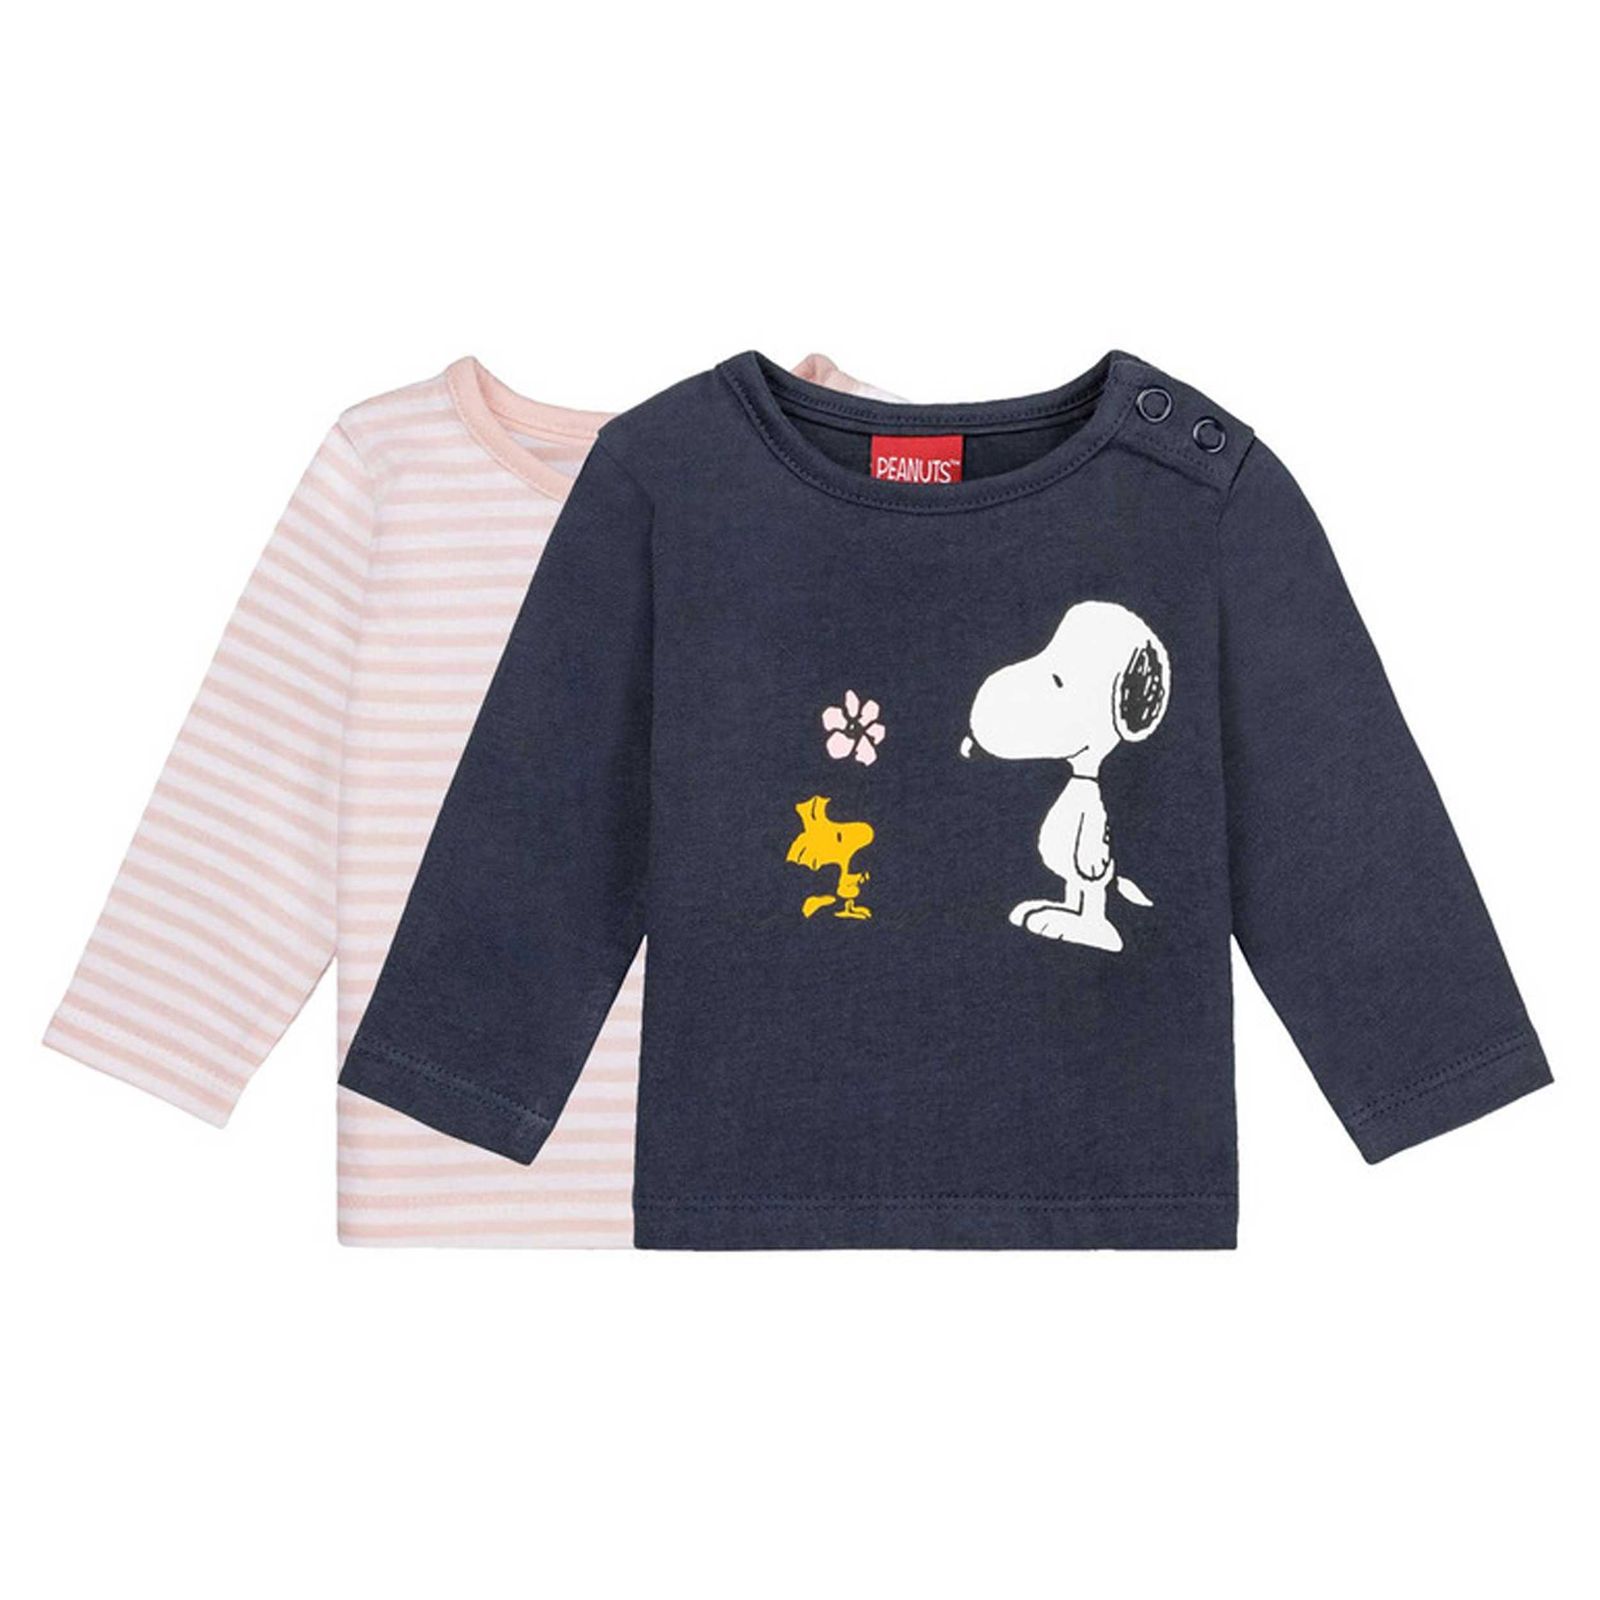 تی شرت آستین بلند نوزادی لوپیلو مدل w-998655 مجموعه 2 عددی -  - 1